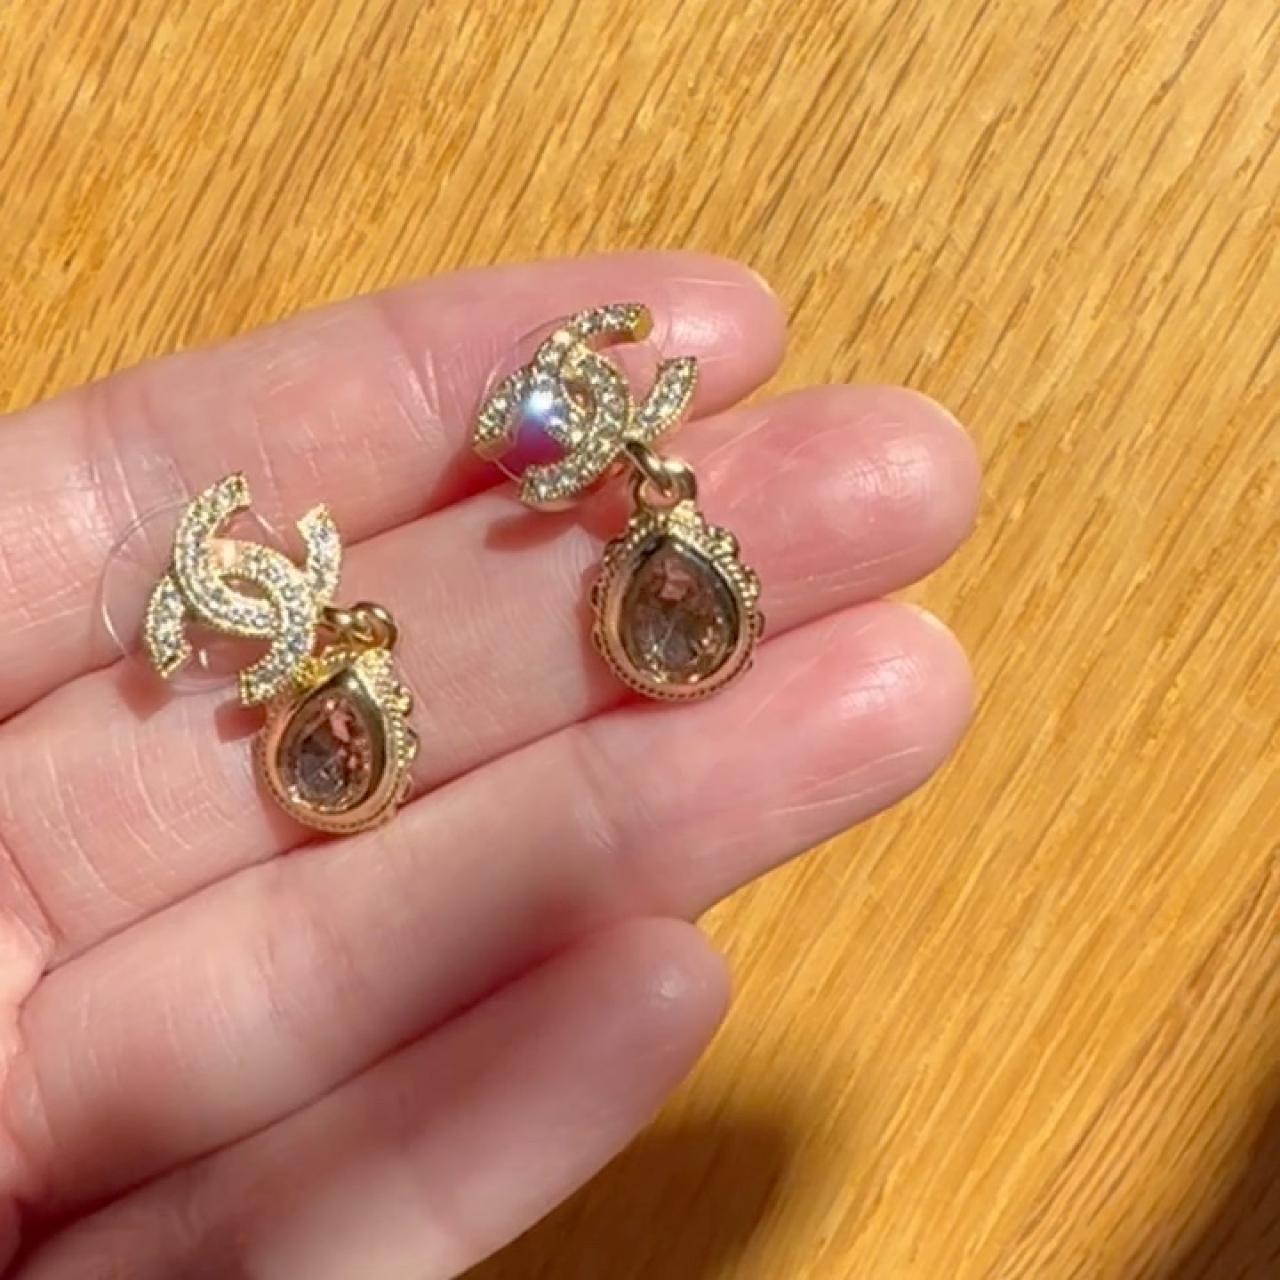 chanel 22k earrings